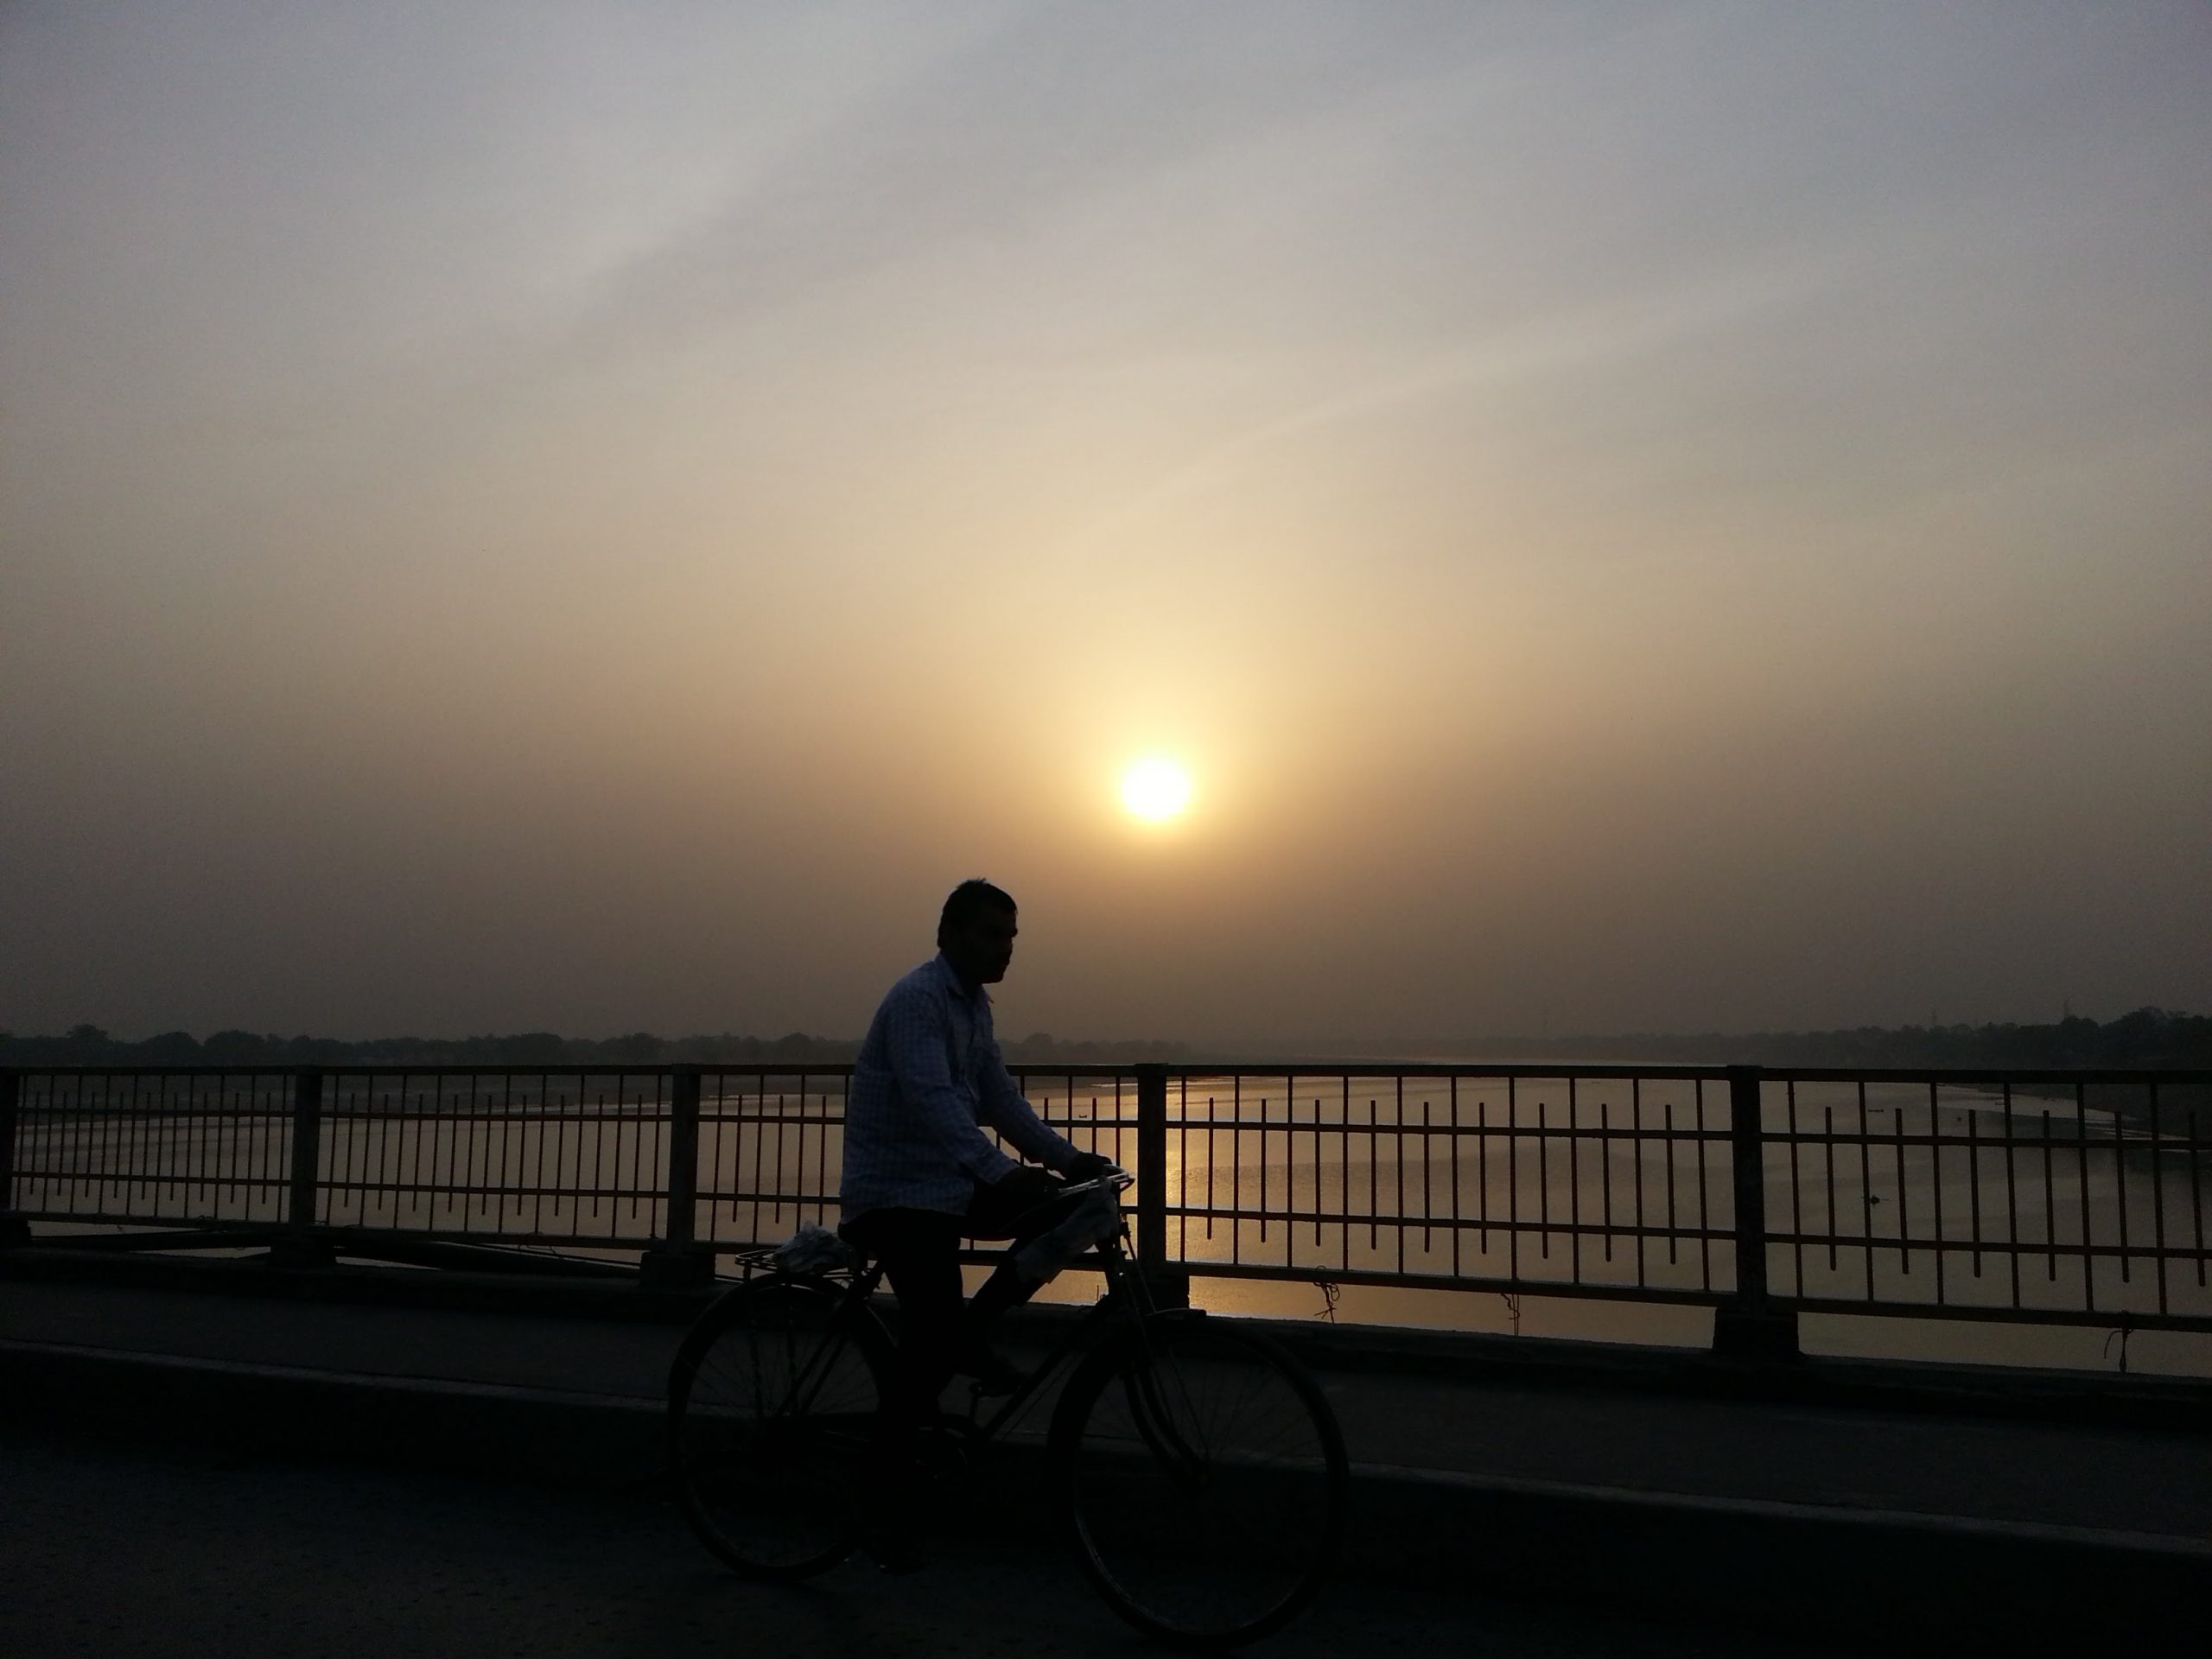 Evening at Shastri Bridge in Prayagraj - Free Image by Vishwajeet on ...